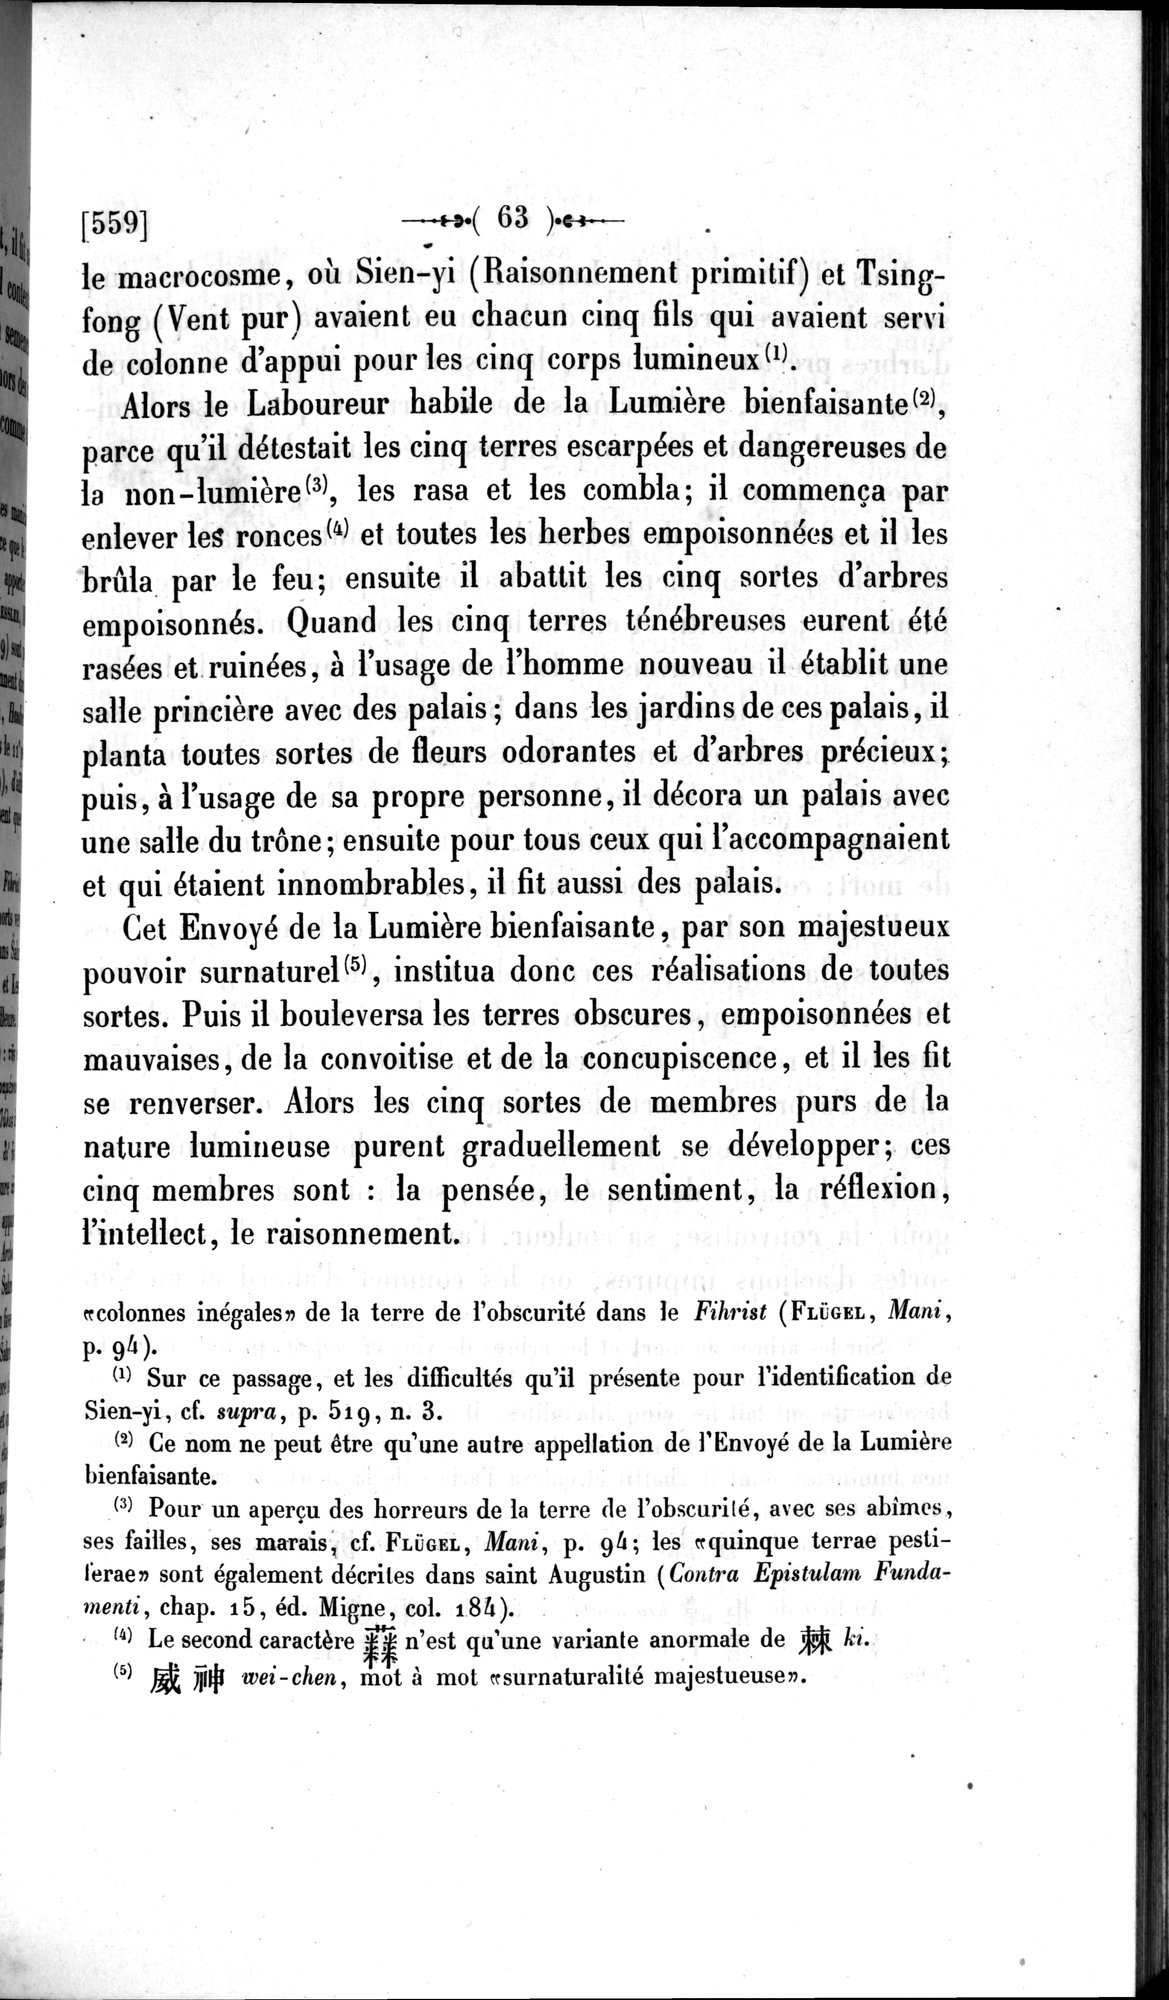 Un traité manichéen retrouvé en Chine : vol.1 / Page 73 (Grayscale High Resolution Image)